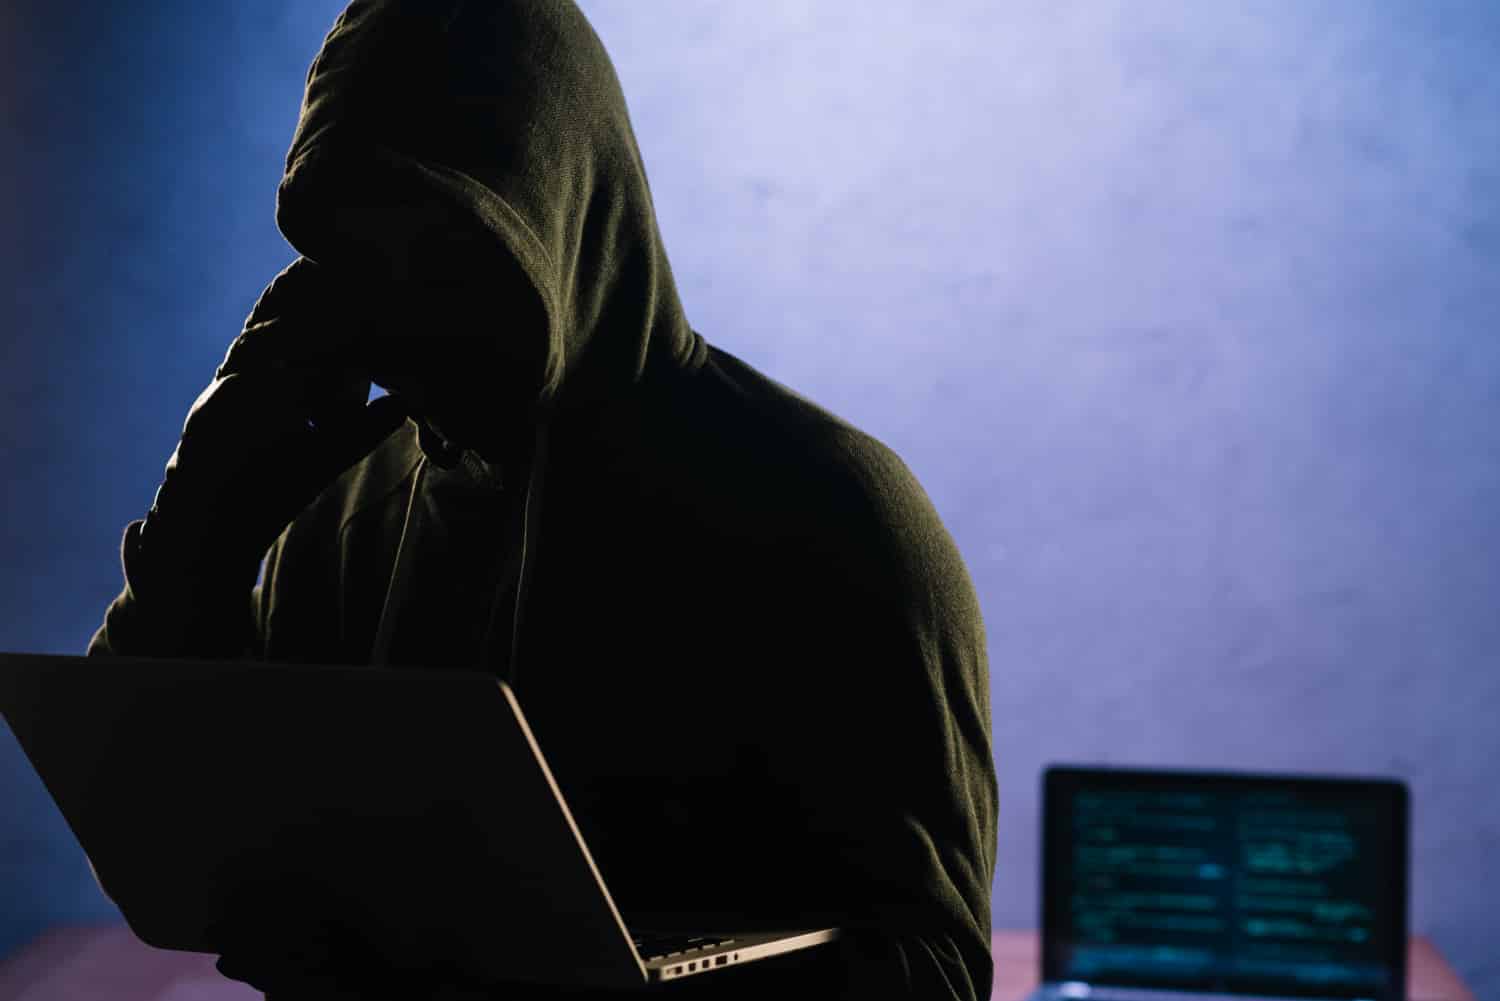 Google divulga relatório sobre os ataques hackers ao youtube | cd1b1e01 hacker | married games hackers | hackers | ataques hackers ao youtube